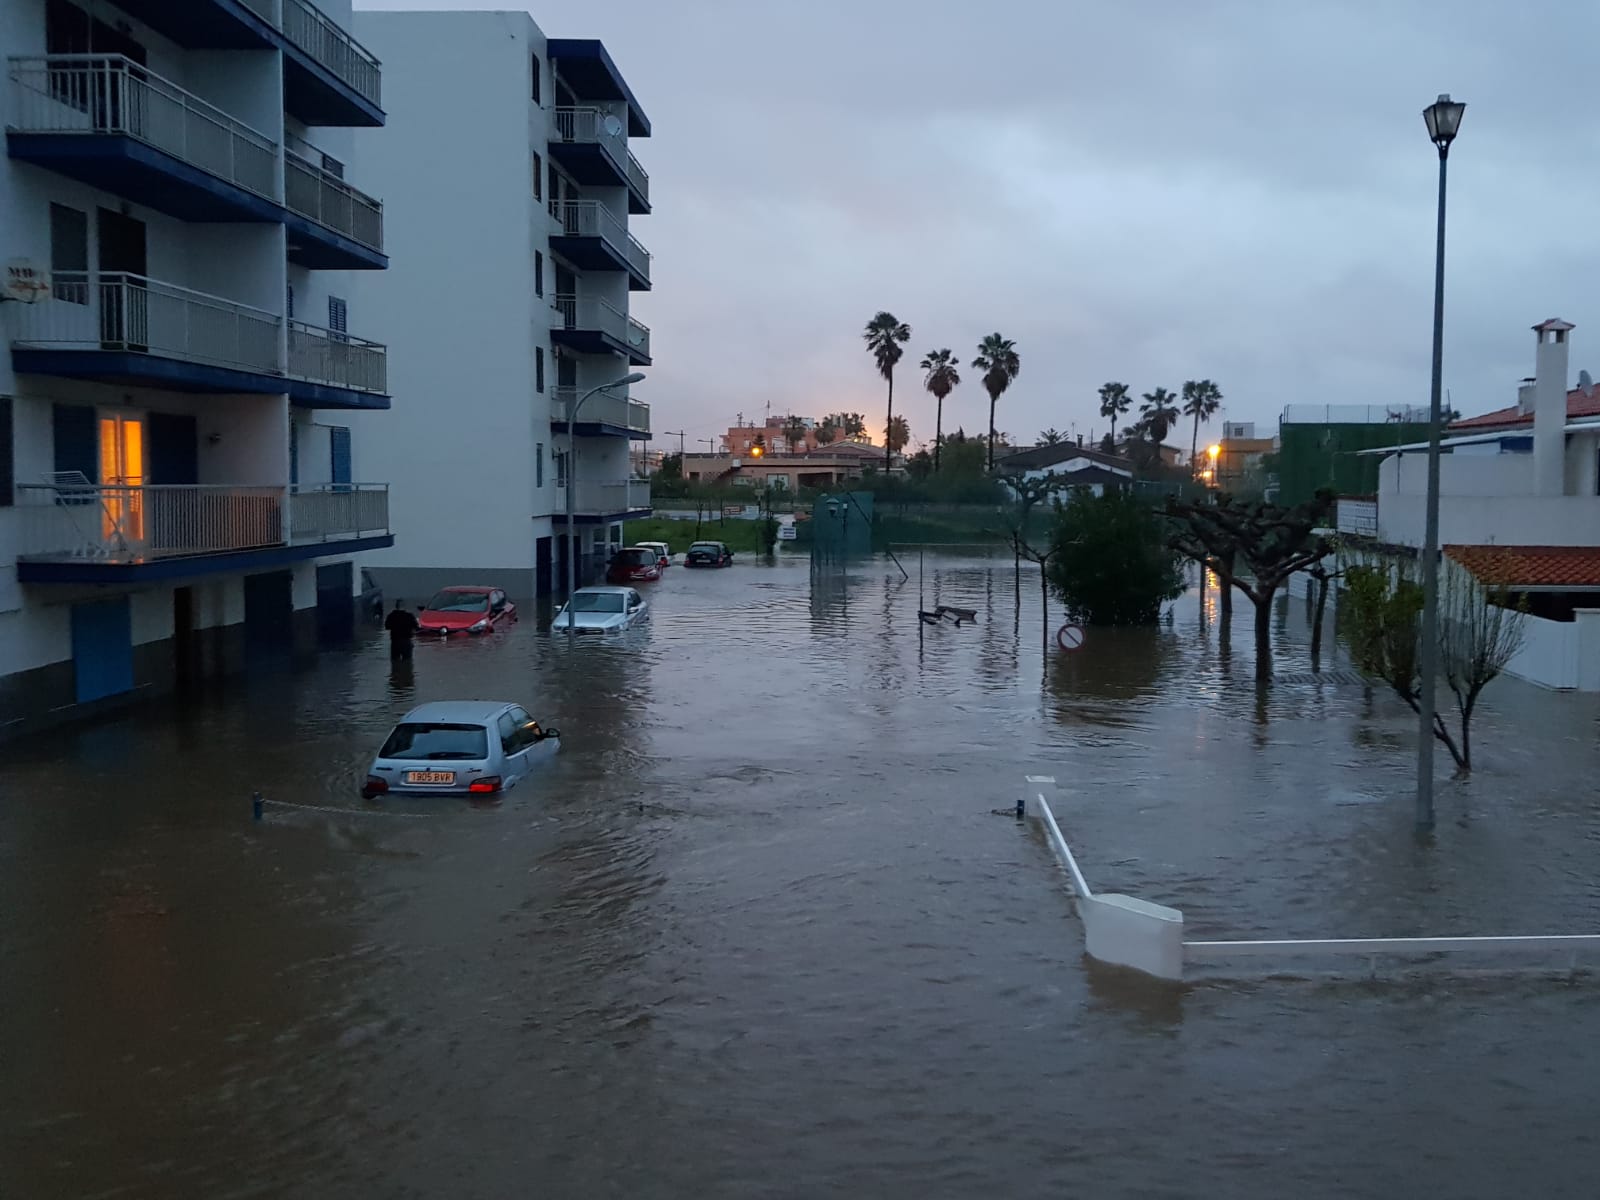 El pleno de Almassora aprueba el Plan contra inundaciones